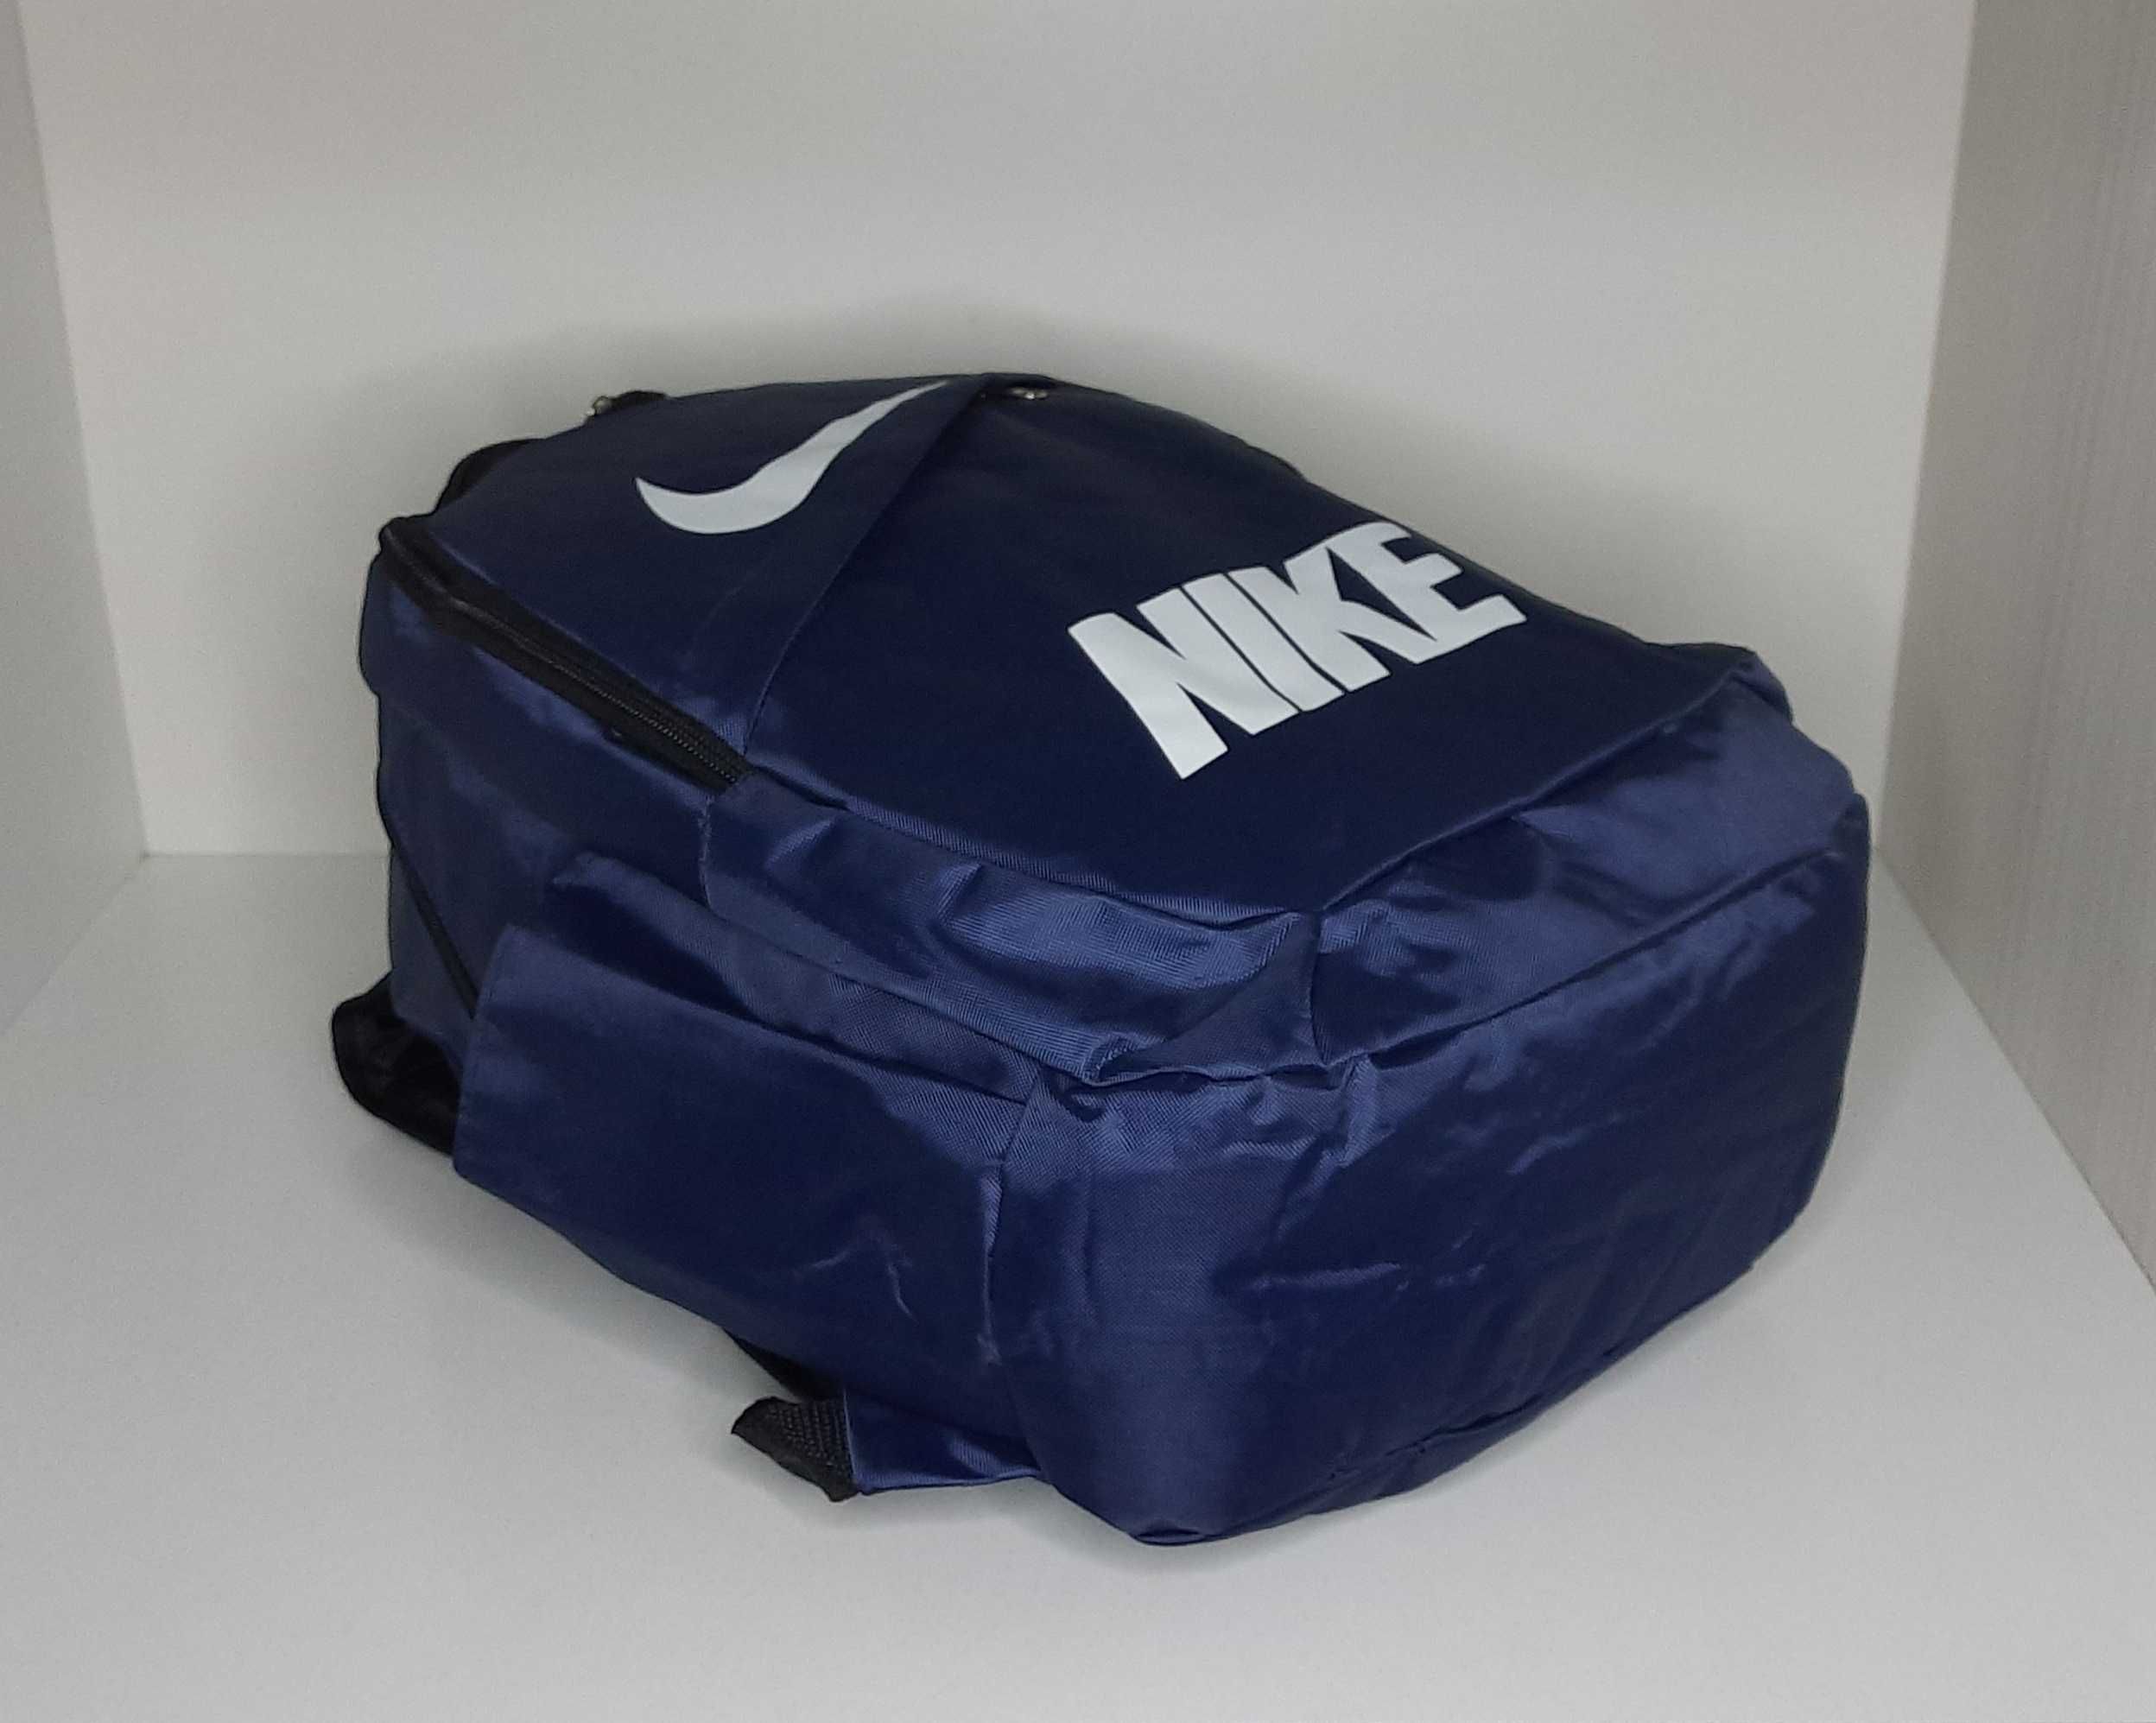 Спортивный рюкзак Nike. Sport. Цвет - тёмно синий. Новый.